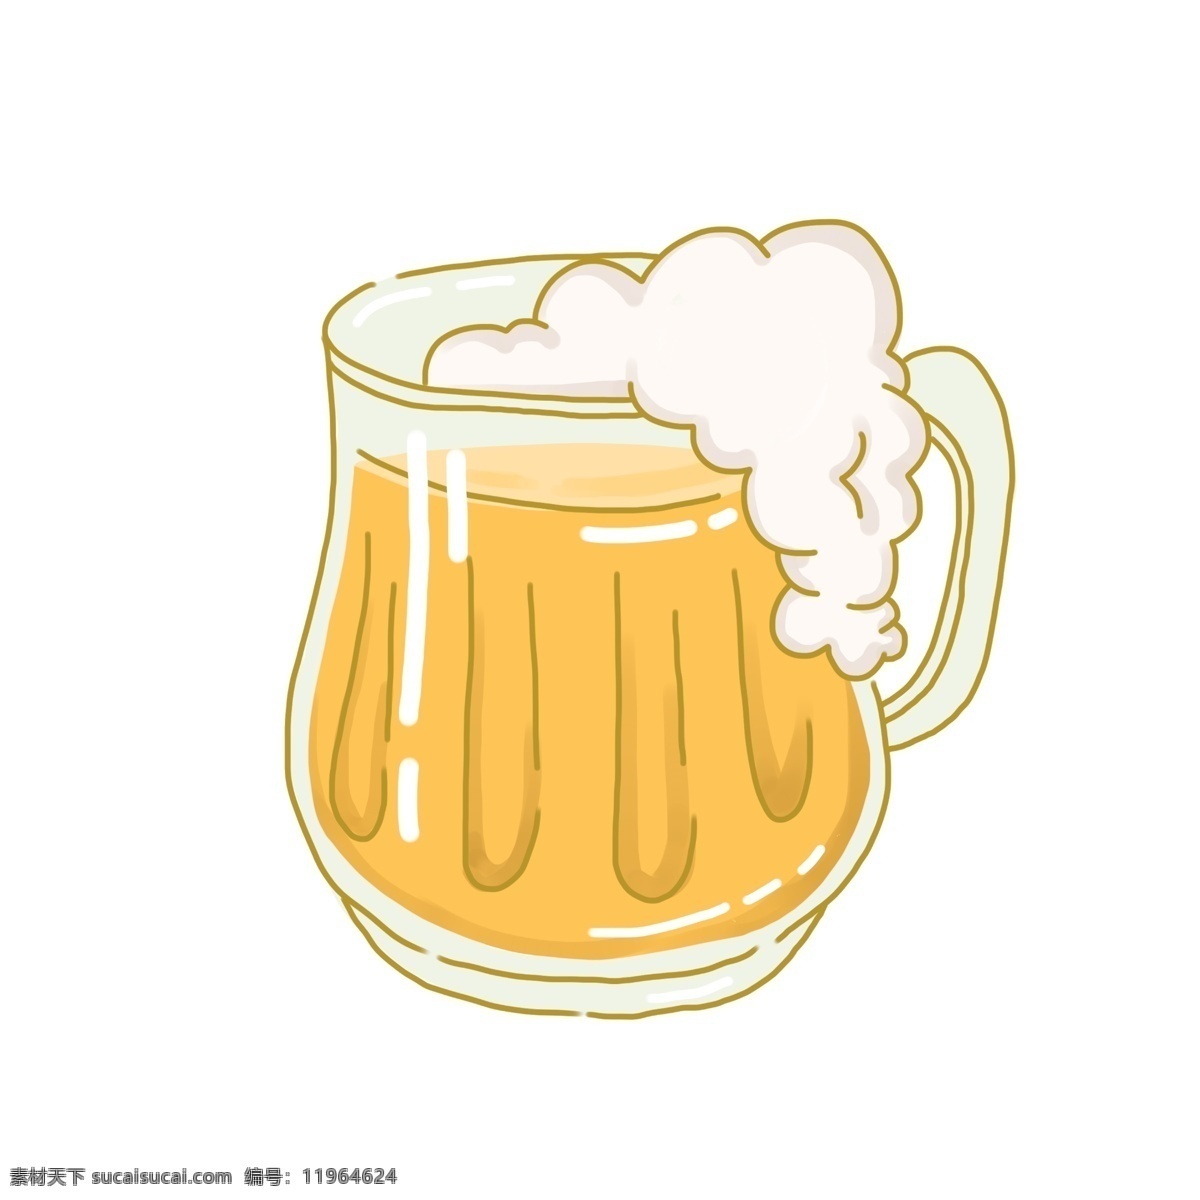 玻璃杯装啤酒 泡沫 玻璃杯 黄色